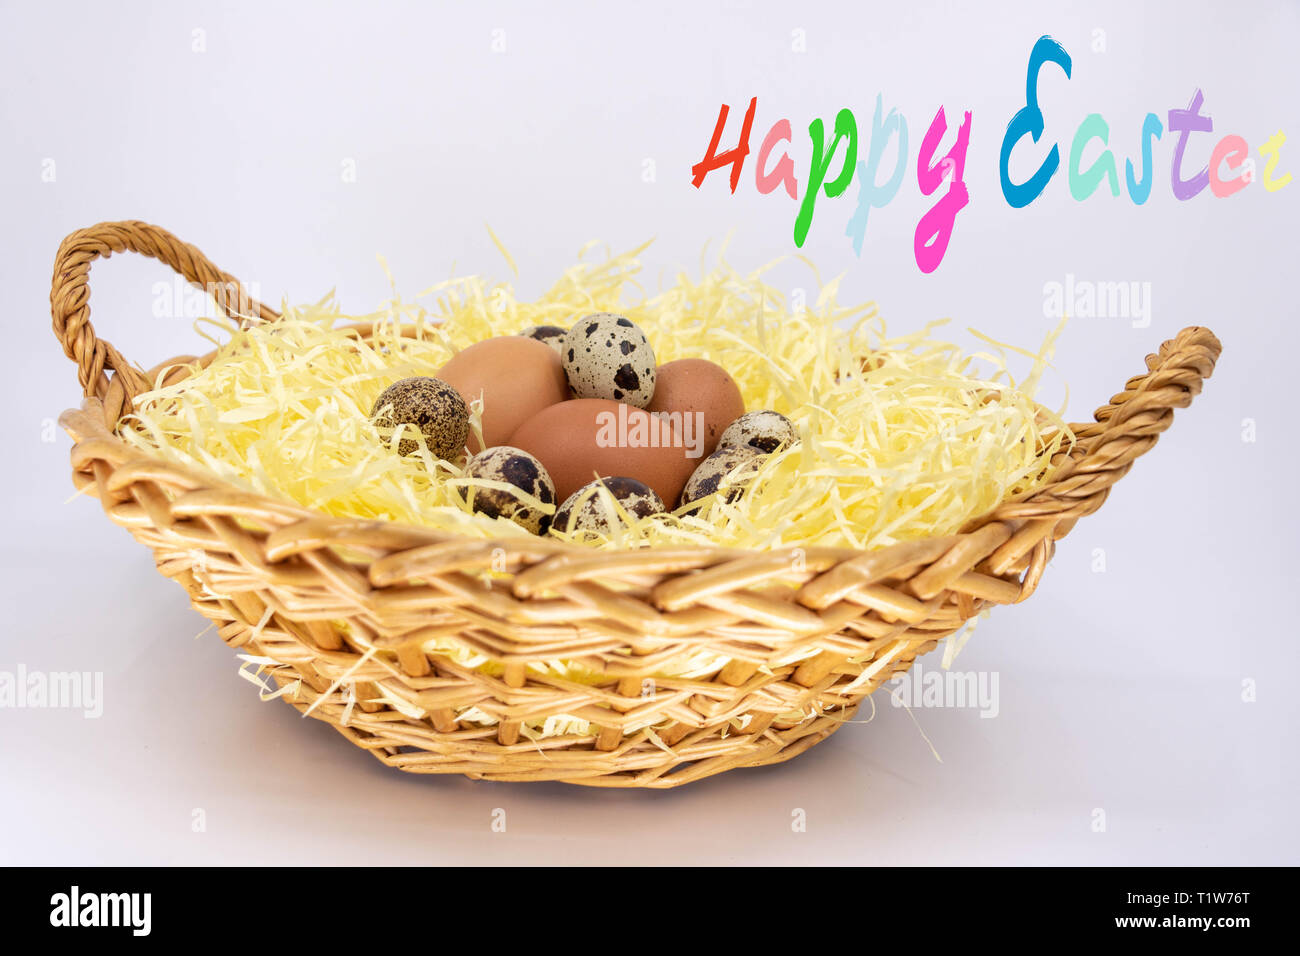 Felices Pascuas y una canasta de huevos frescos Foto de stock